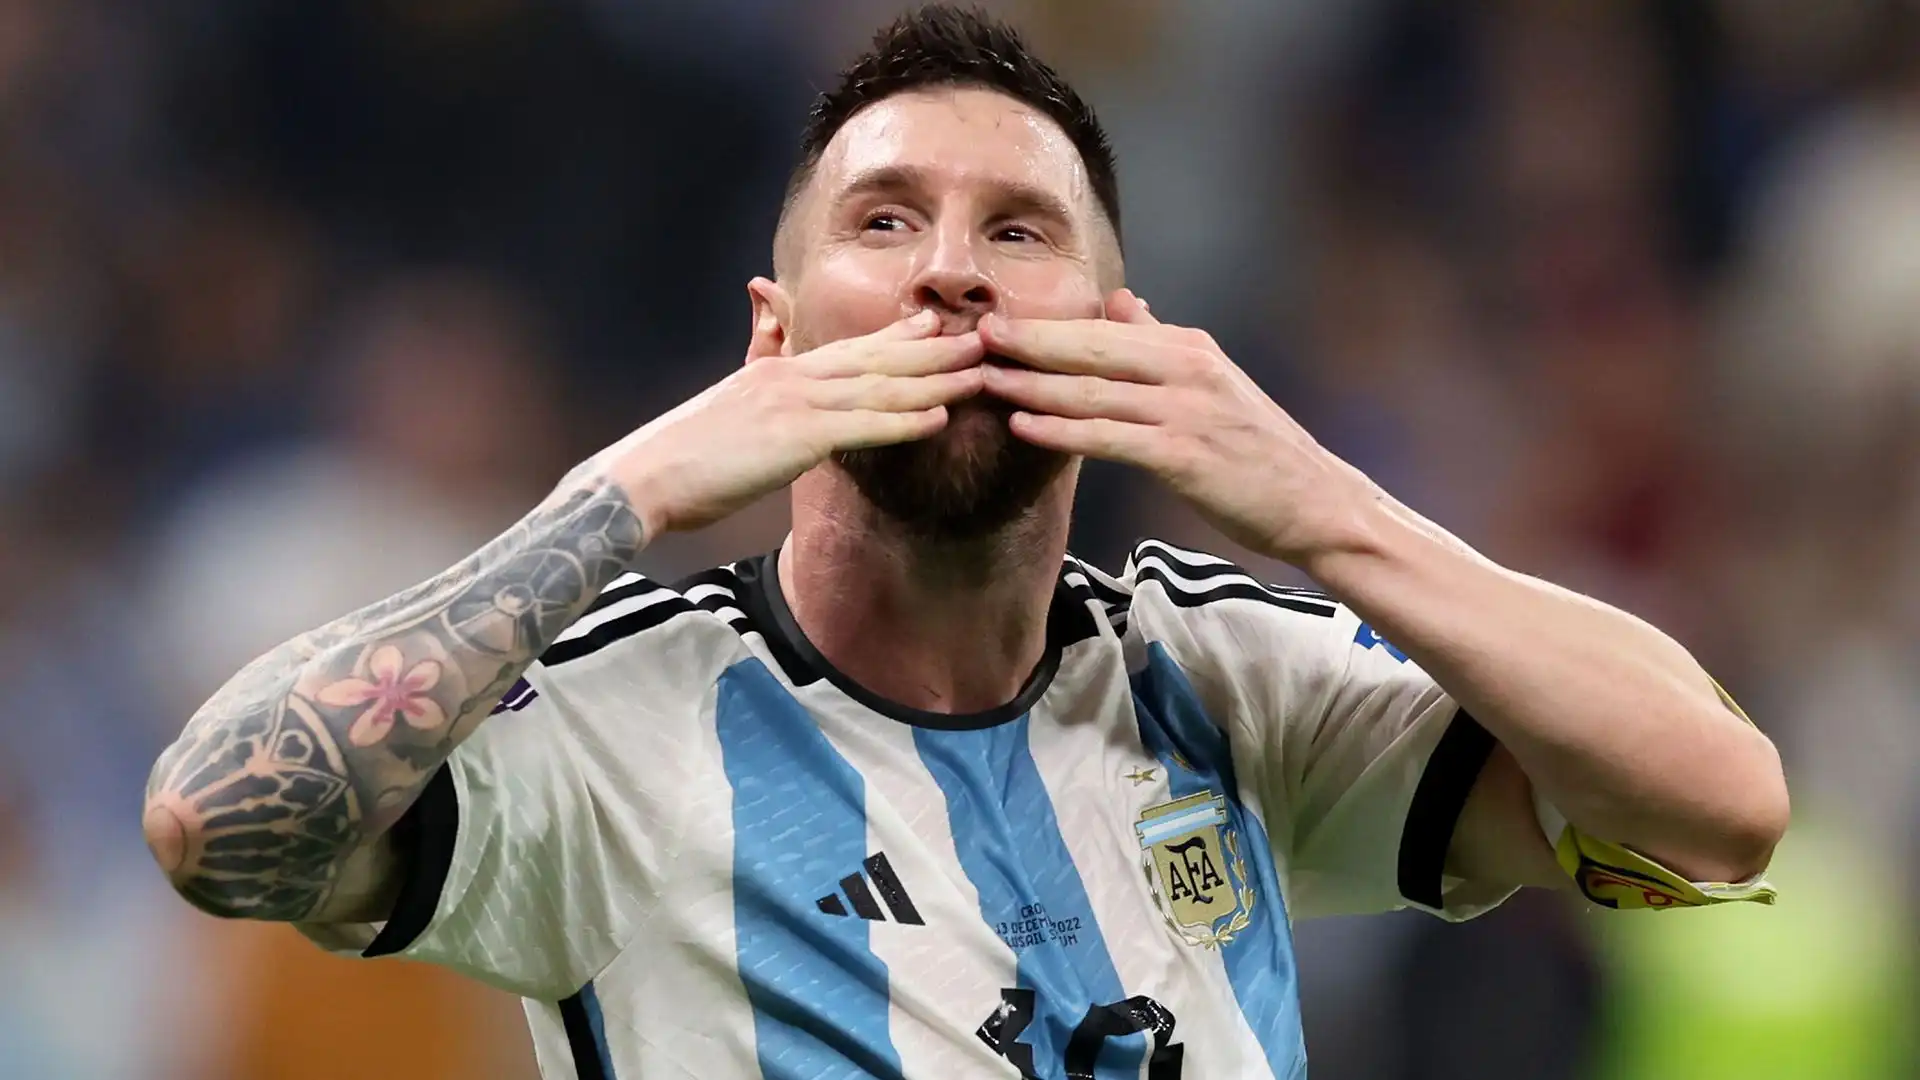 7- Il genio del calcio Lionel Messi ha totalizzato 1.67 miliardi di dollari